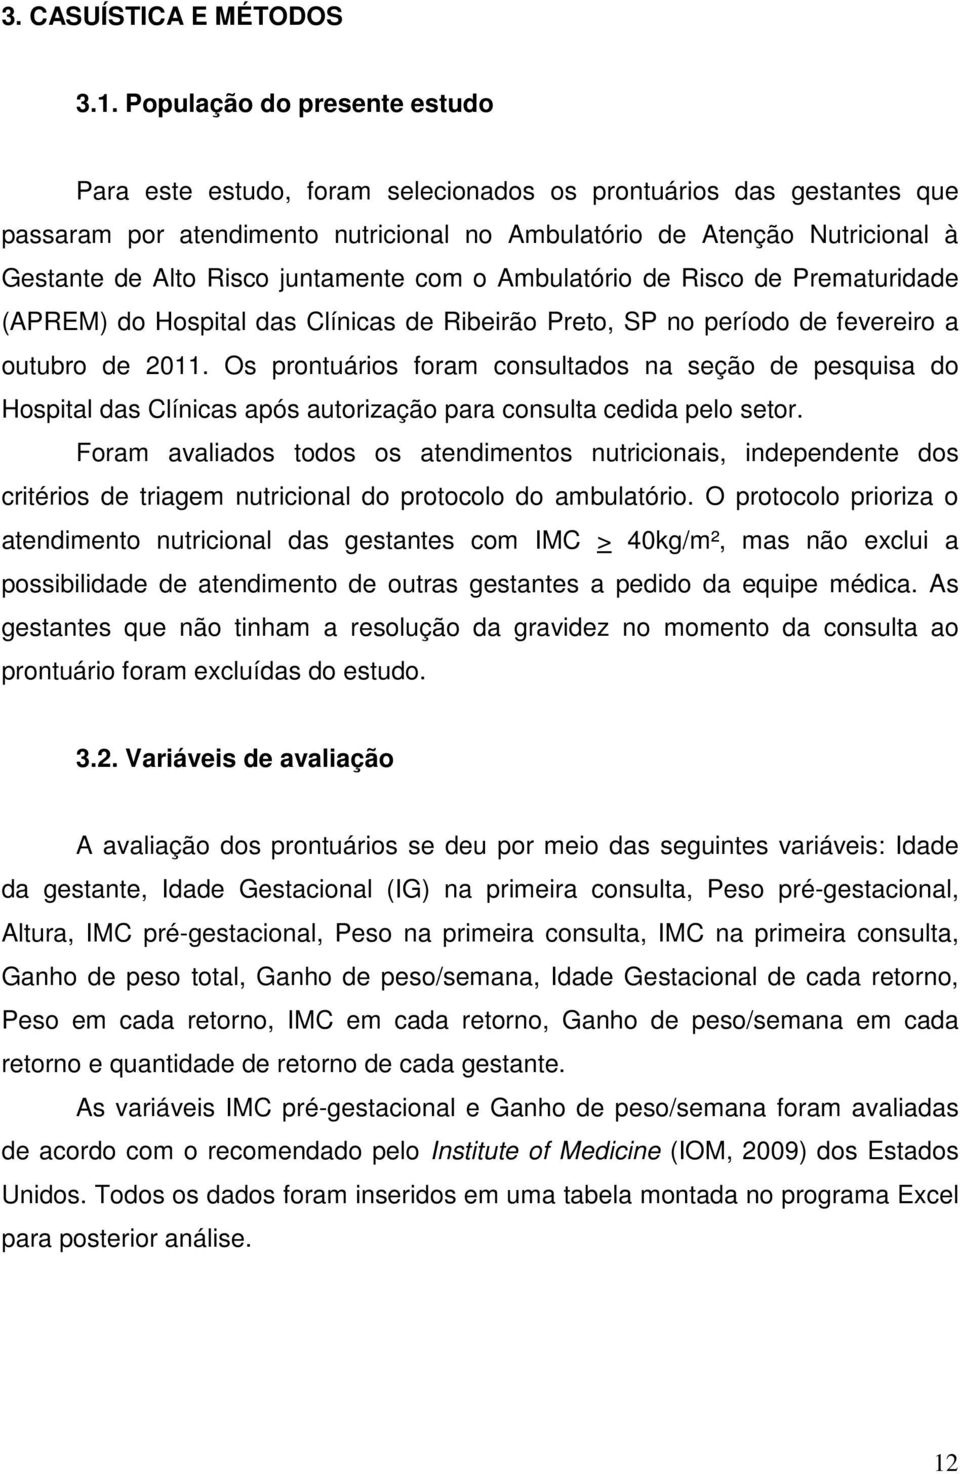 juntamente com o Ambulatório de Risco de Prematuridade (APREM) do Hospital das Clínicas de Ribeirão Preto, SP no período de fevereiro a outubro de 2011.